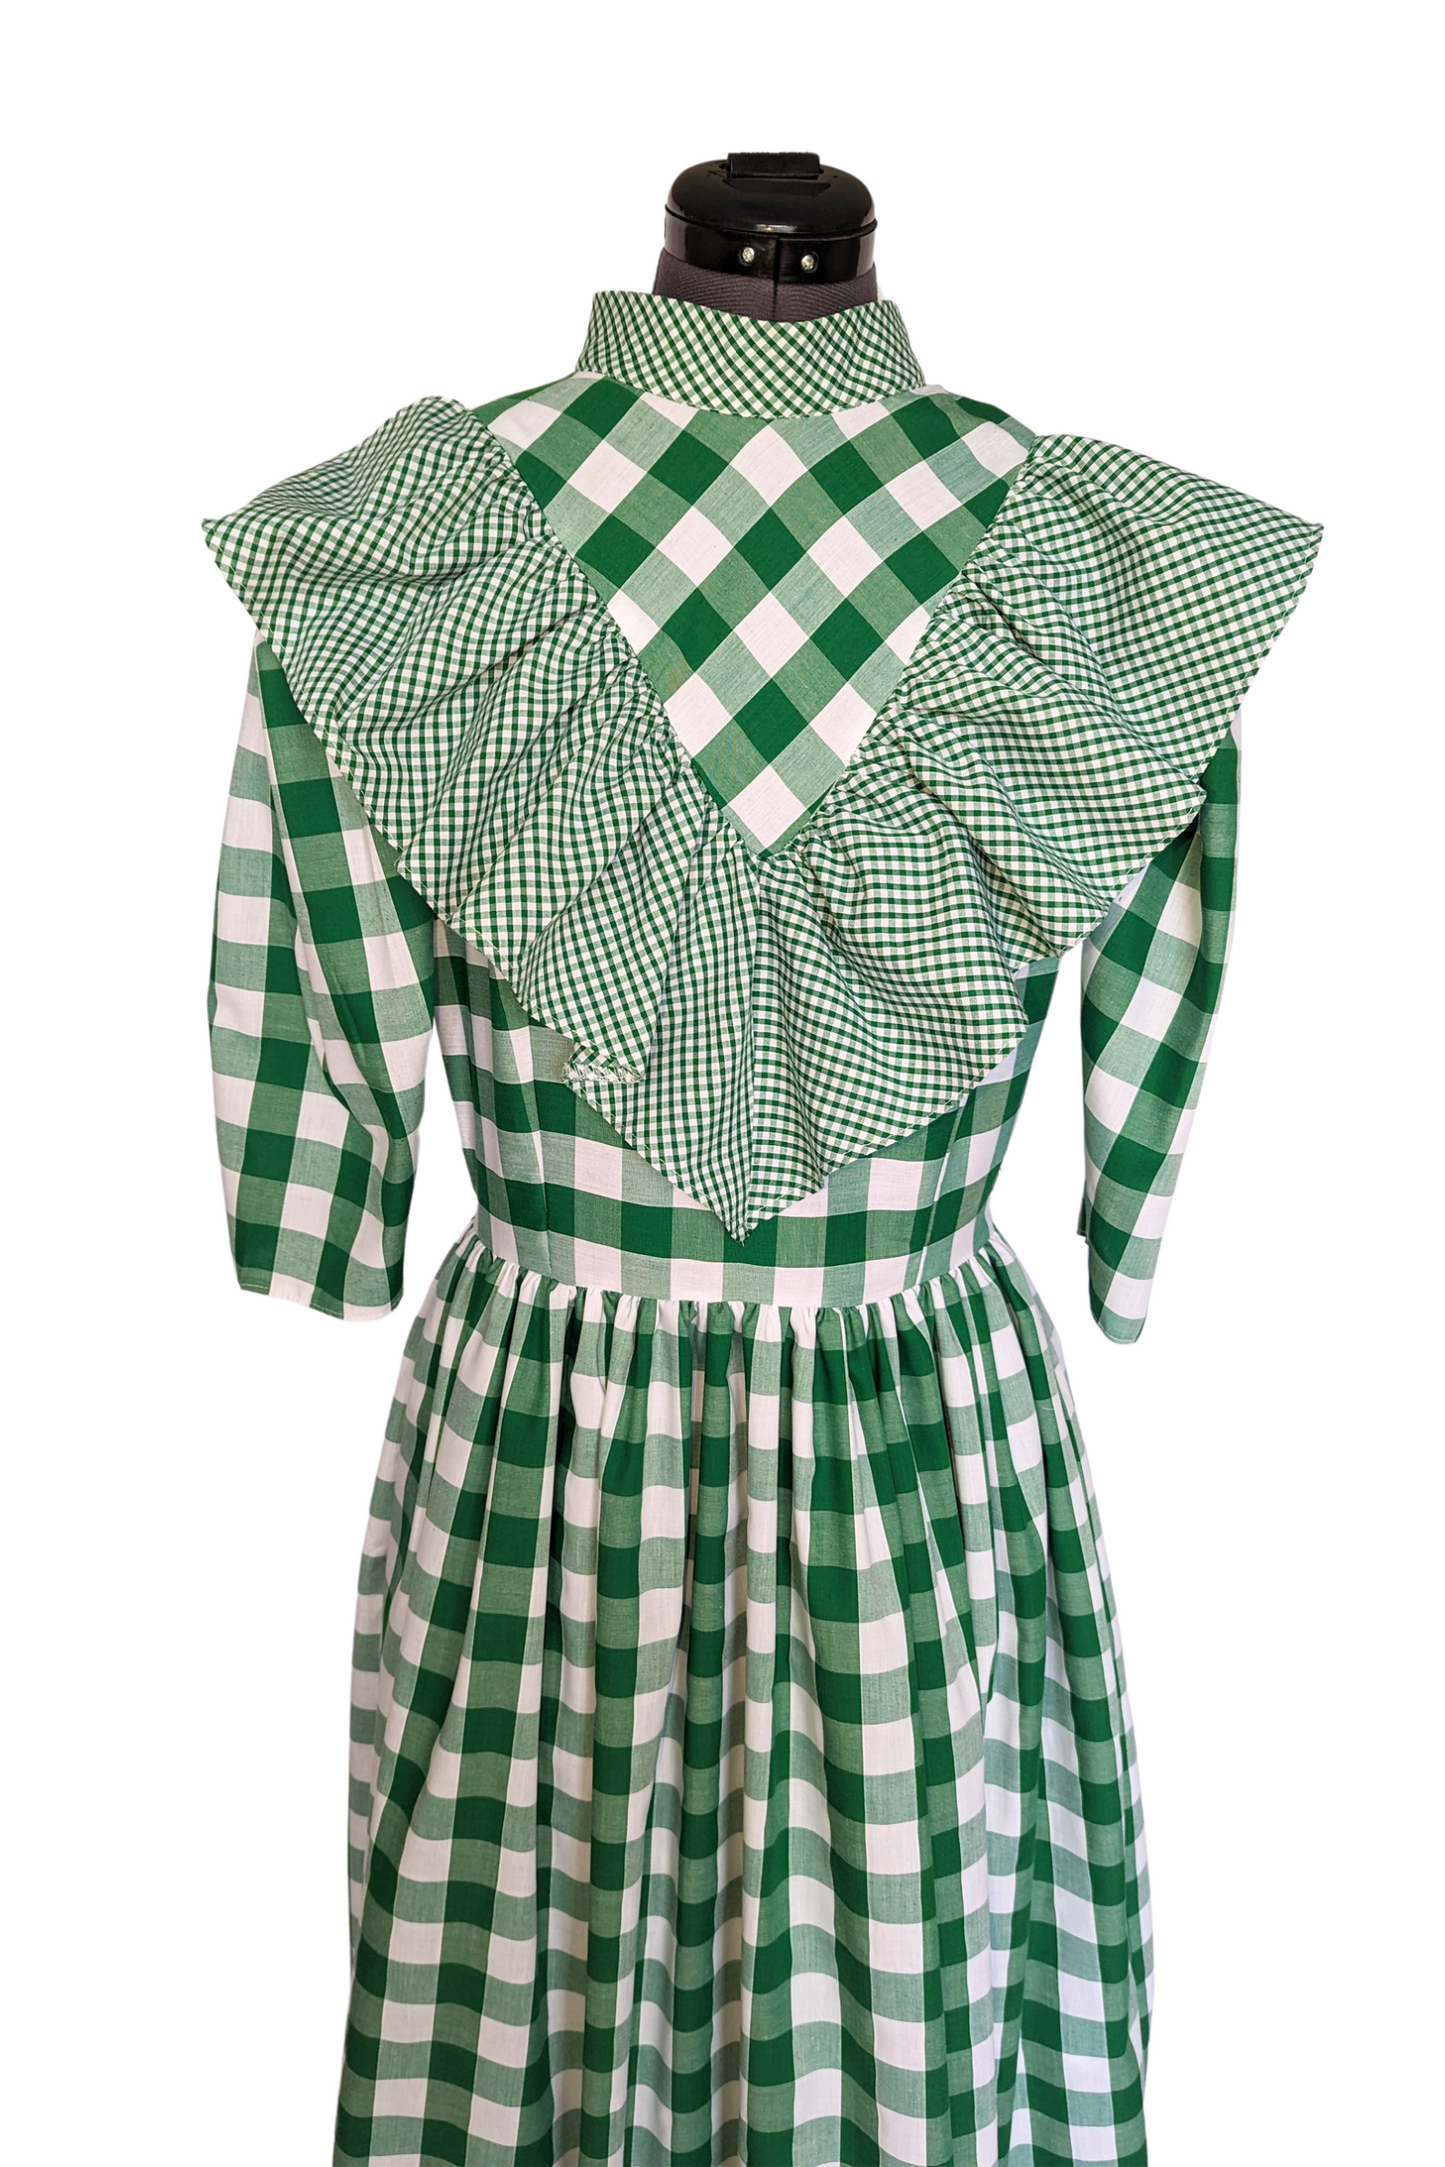 Emmeline, Victorian Vintage dress in green gingham